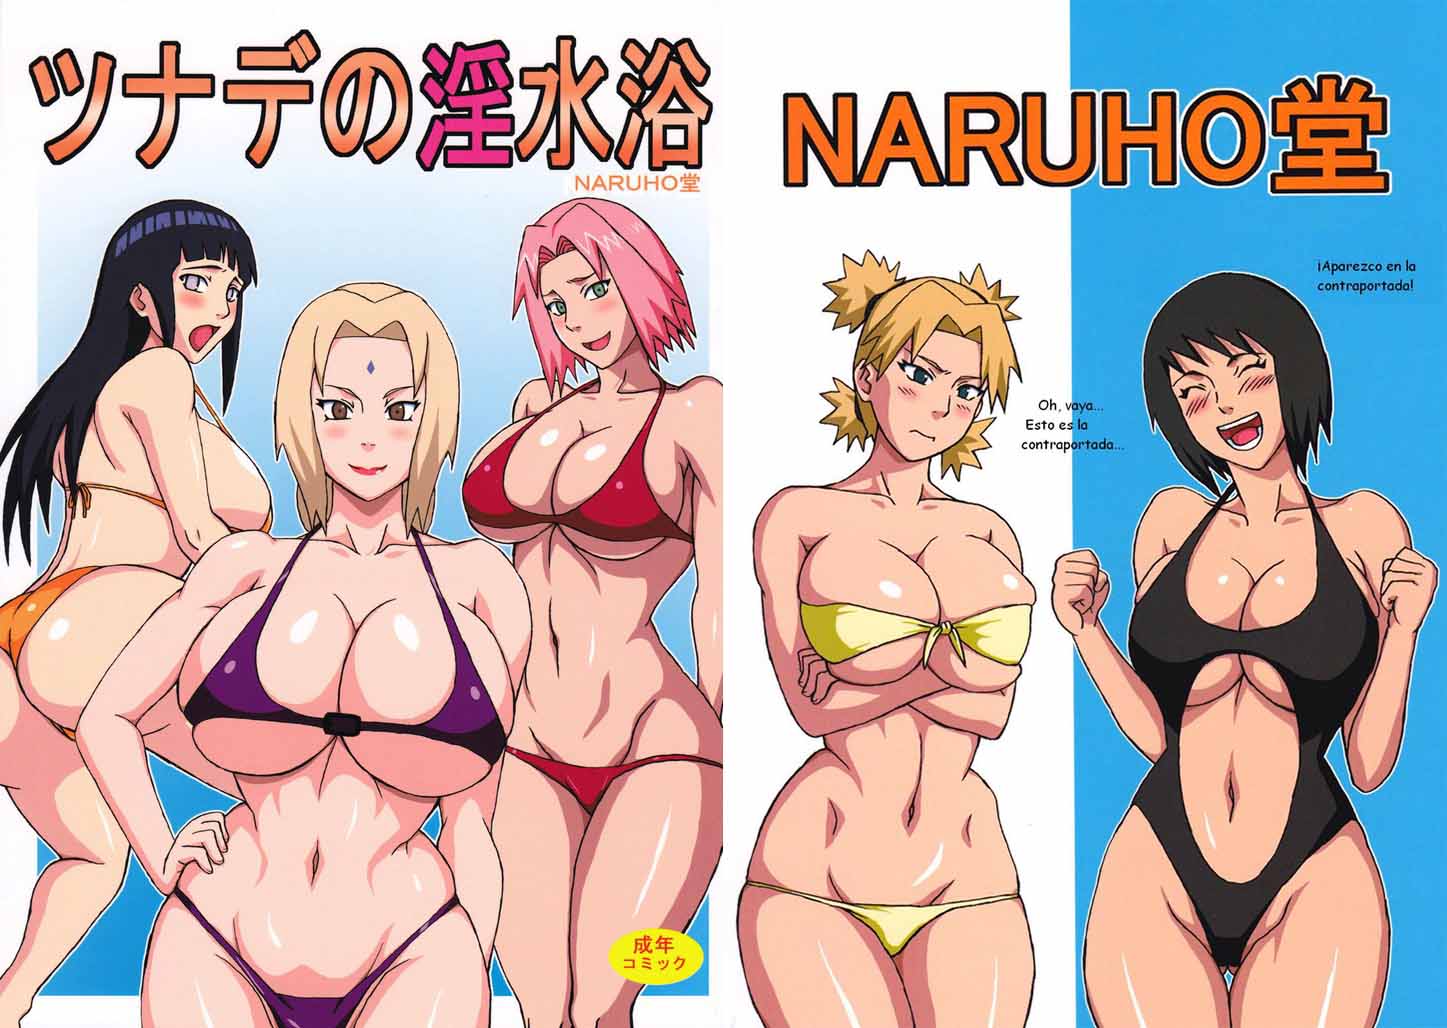 0orno - Comic Porno Naruto Hinata Sakura desnudas